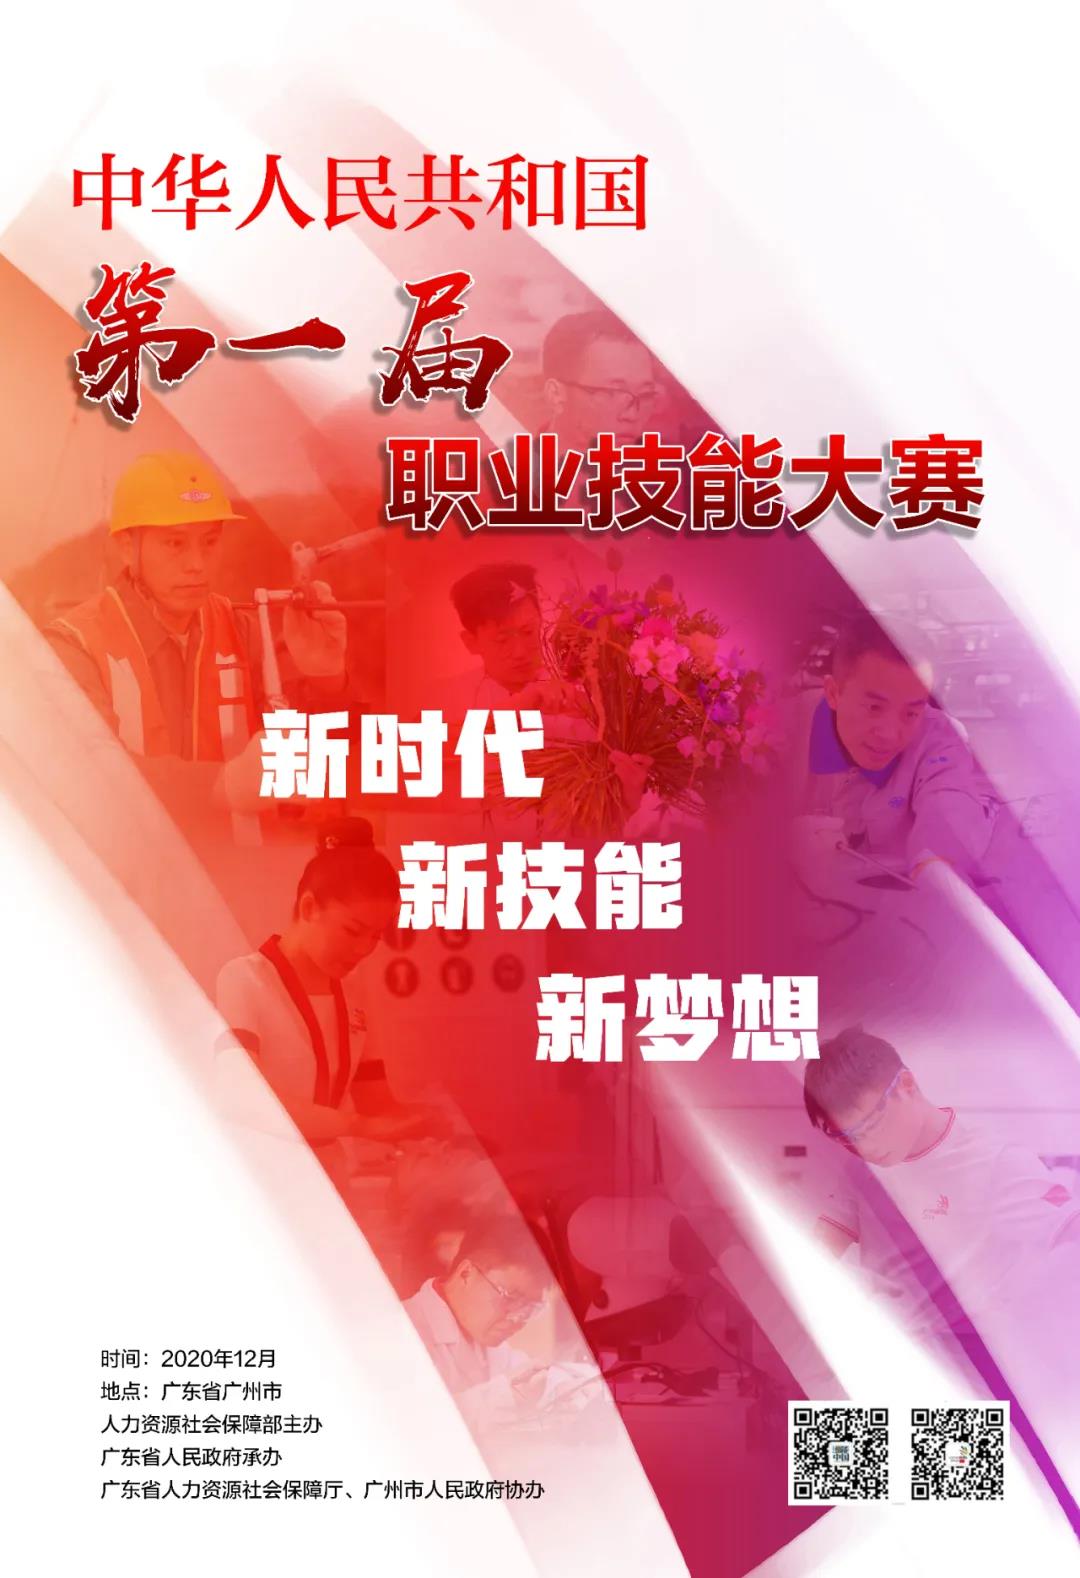 中华人民共和国第一届职业技能大赛竞赛技术规则